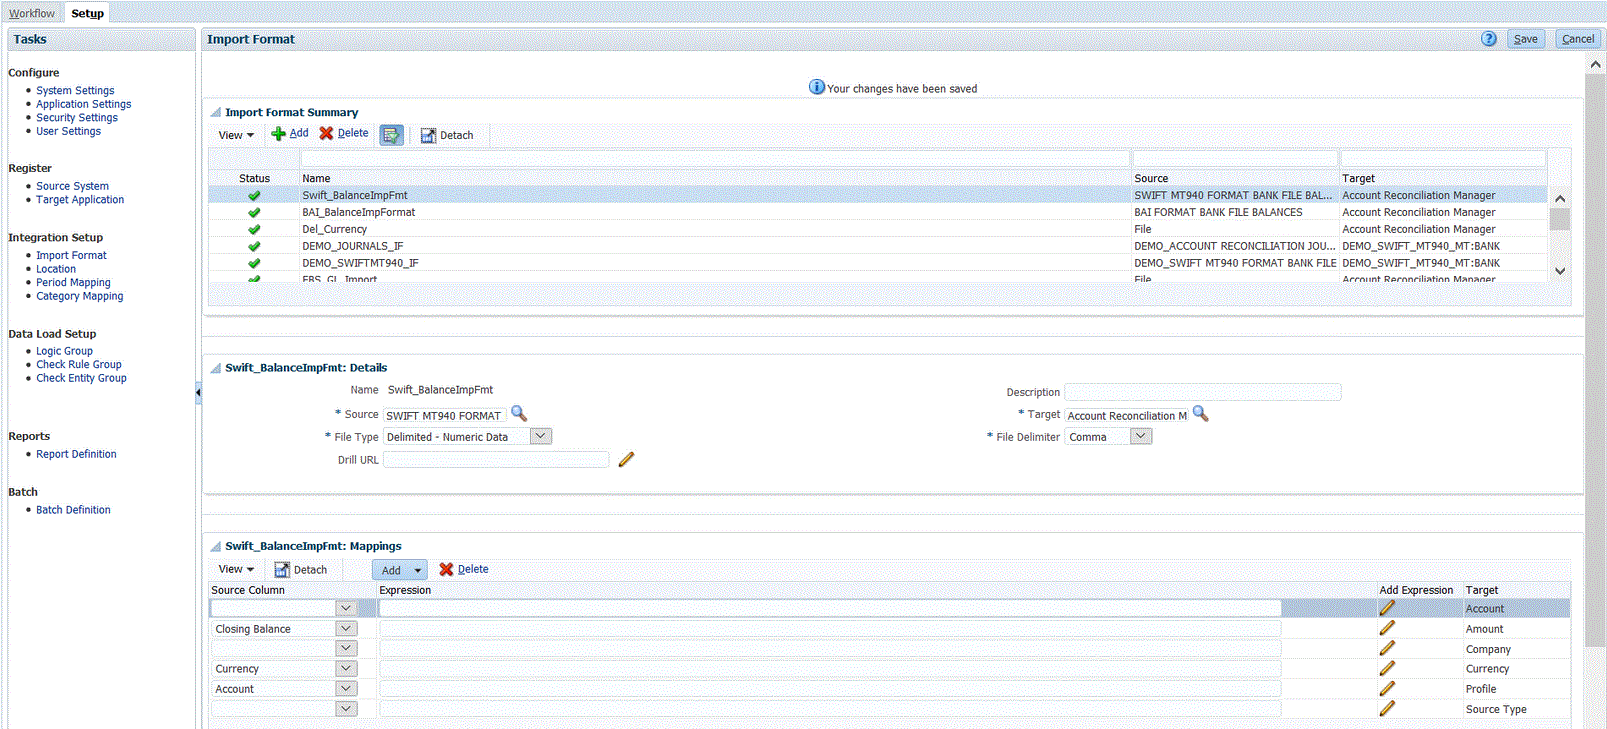 En la imagen se muestra el formato de importación para Balances de archivo bancario con formato SWIFT MT940